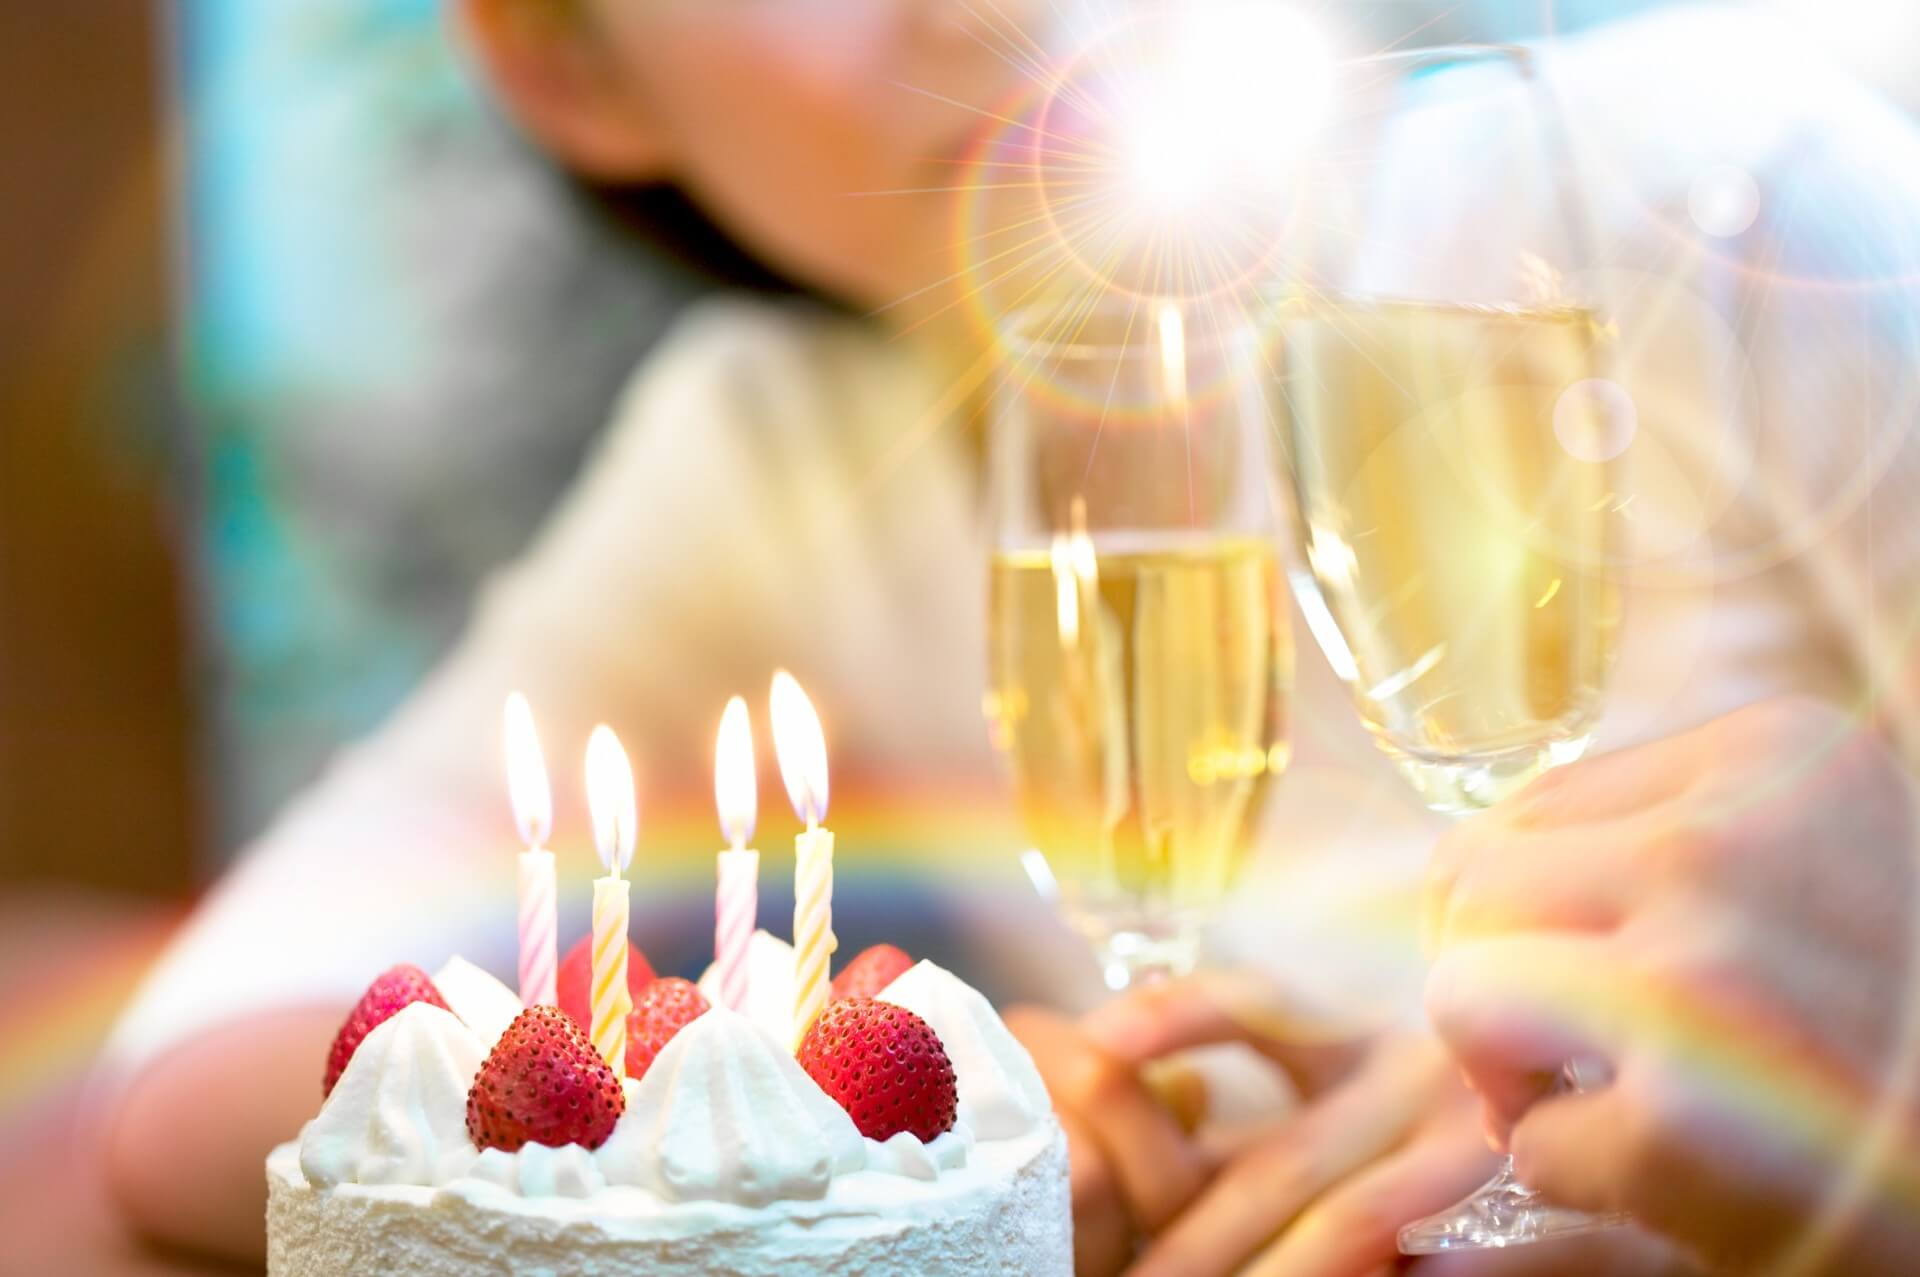 Fødselsdagskage og champagne er eksempel på at matche mad og vin